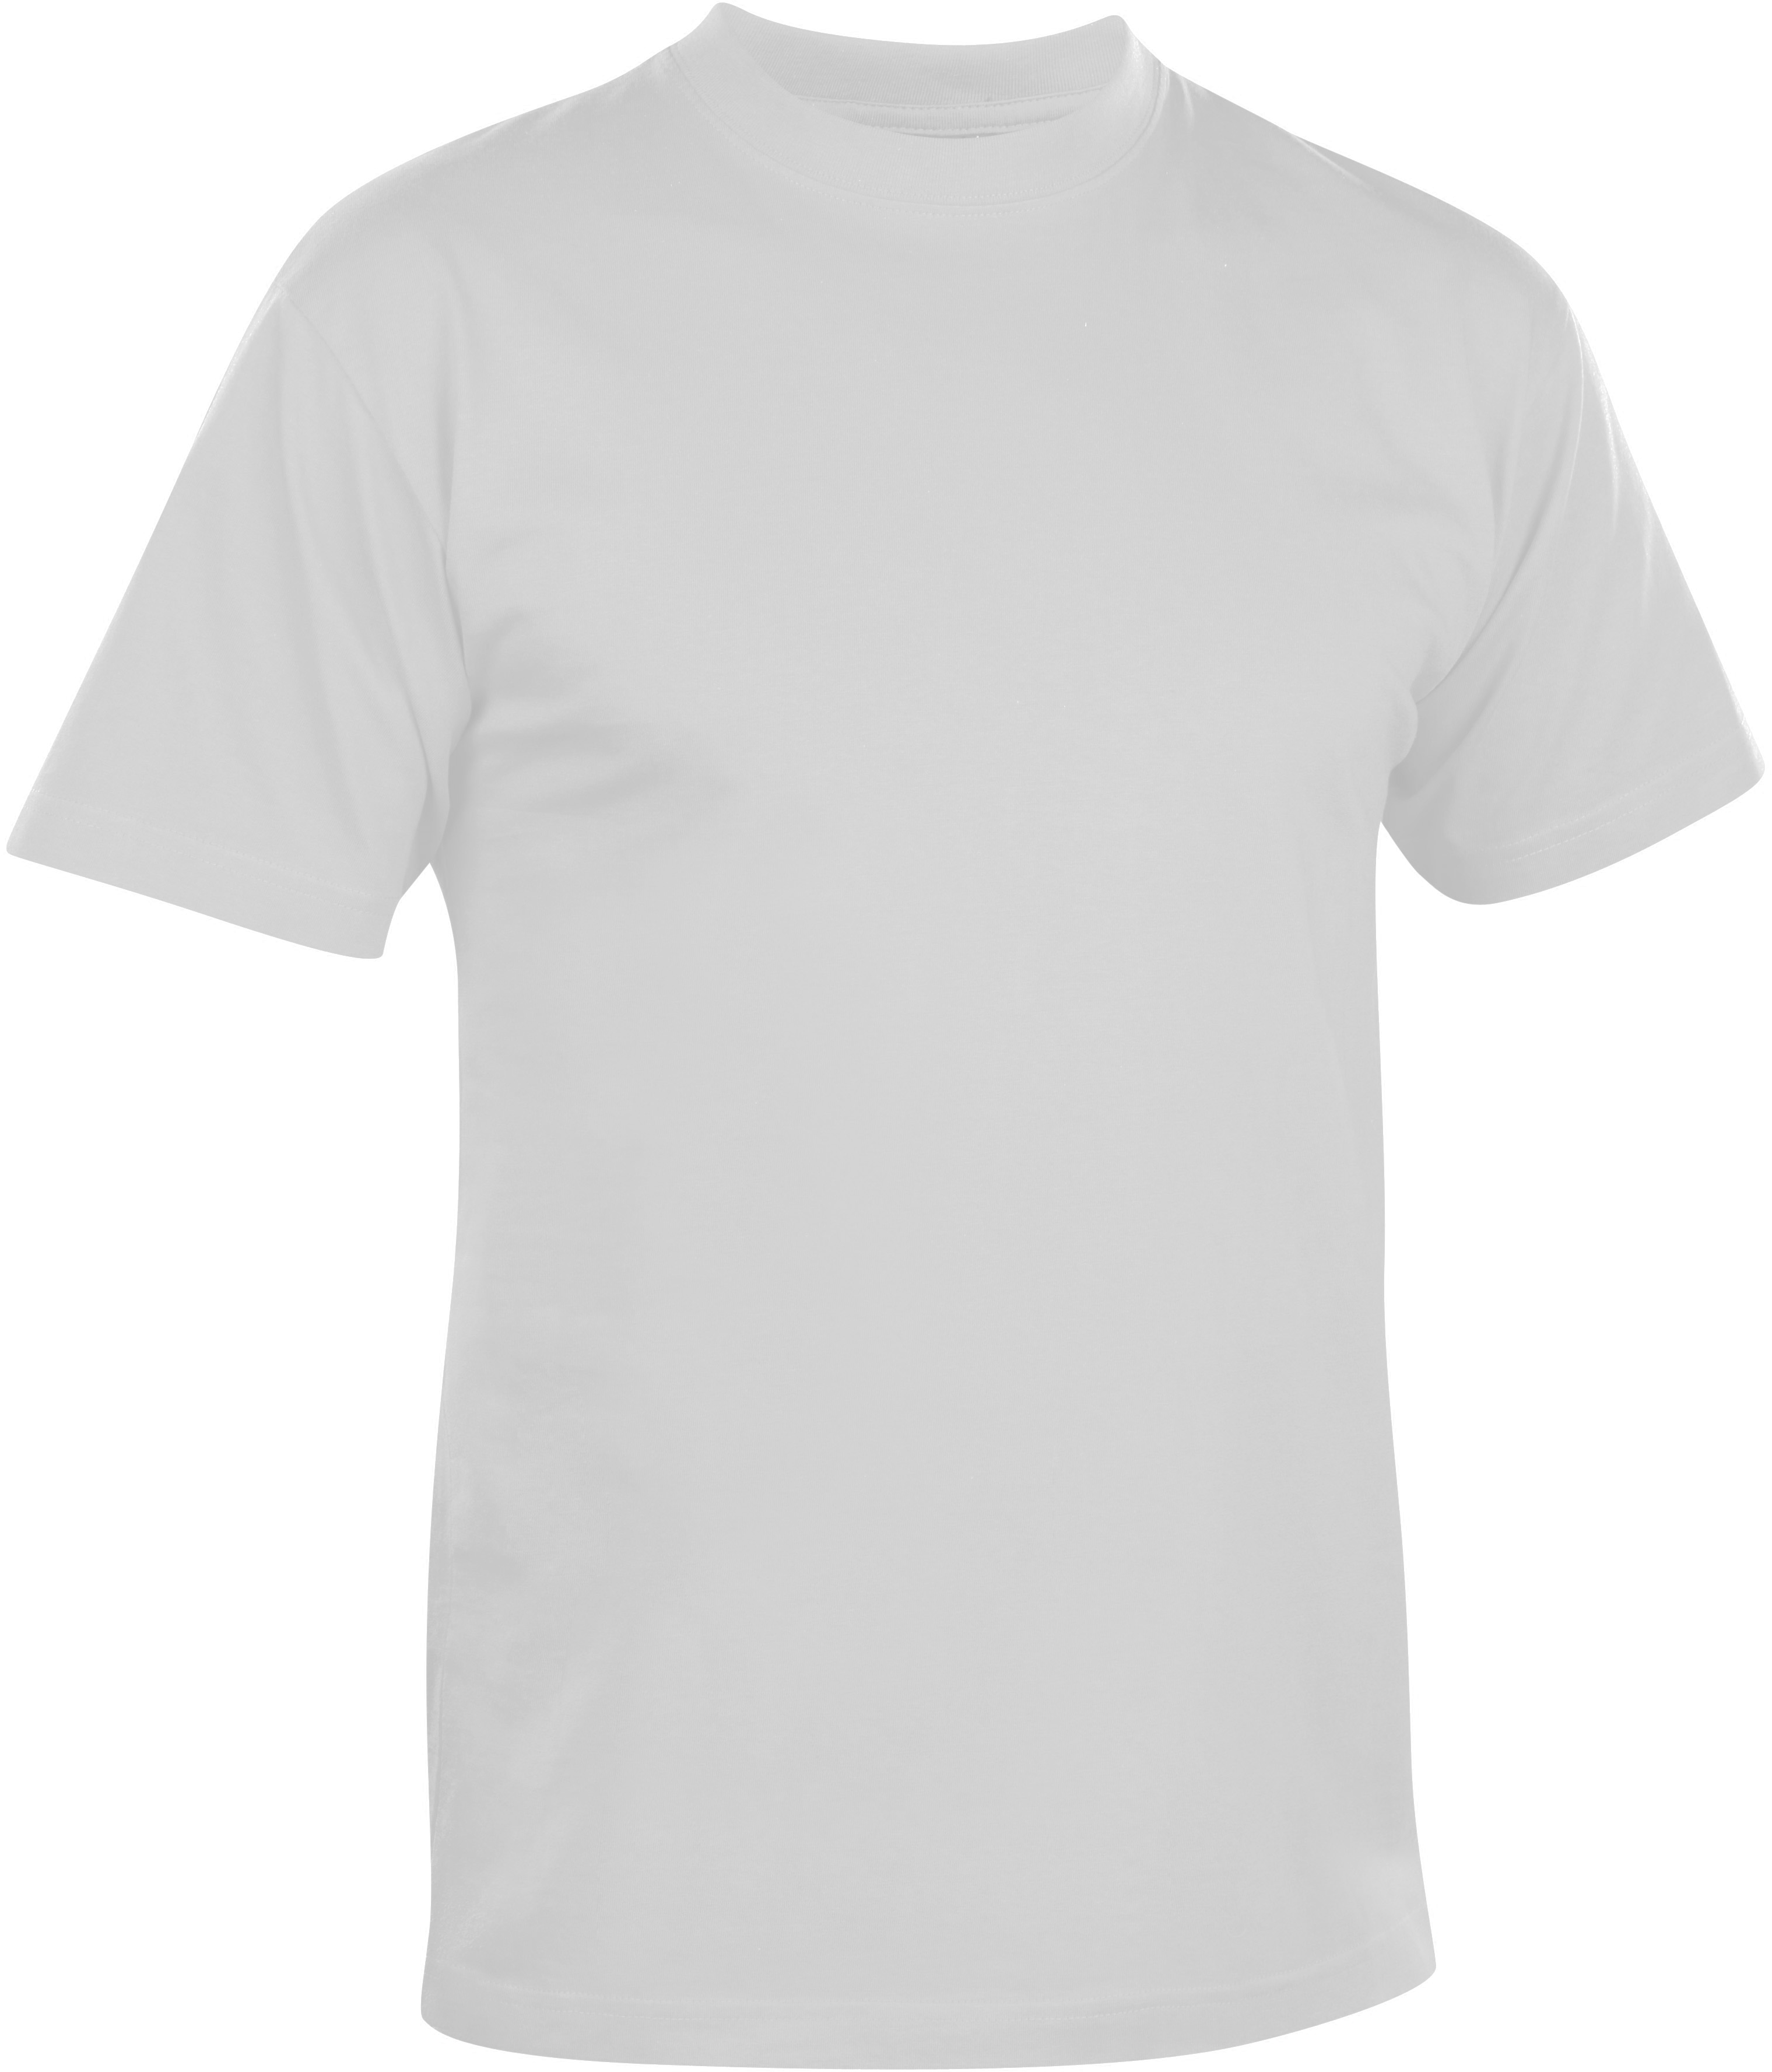 Download Download Transparent T Shirt Mockup Png Background ...